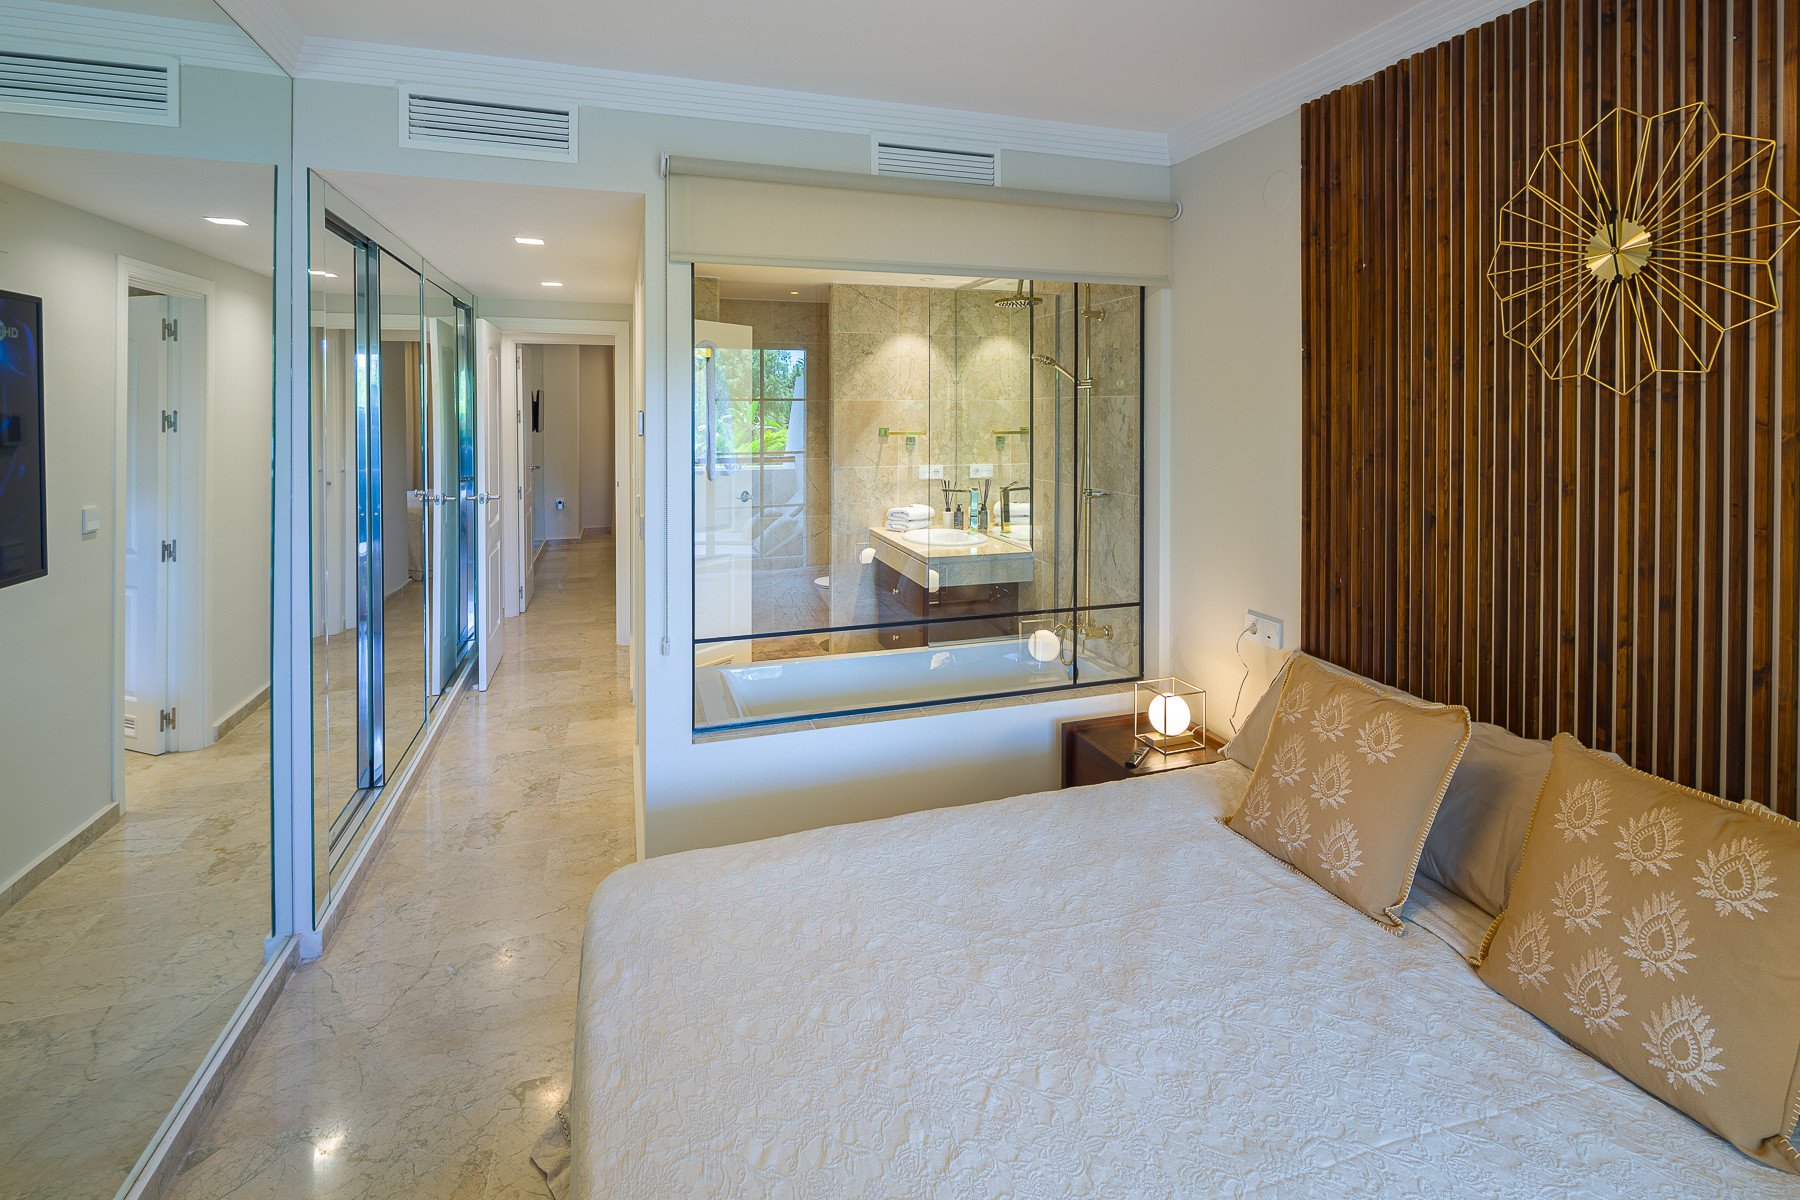 Newly renovated Luxury design, cozy apartment in prestigious Marbella Golden Mile urbanization "Balcon de Puente Romano"